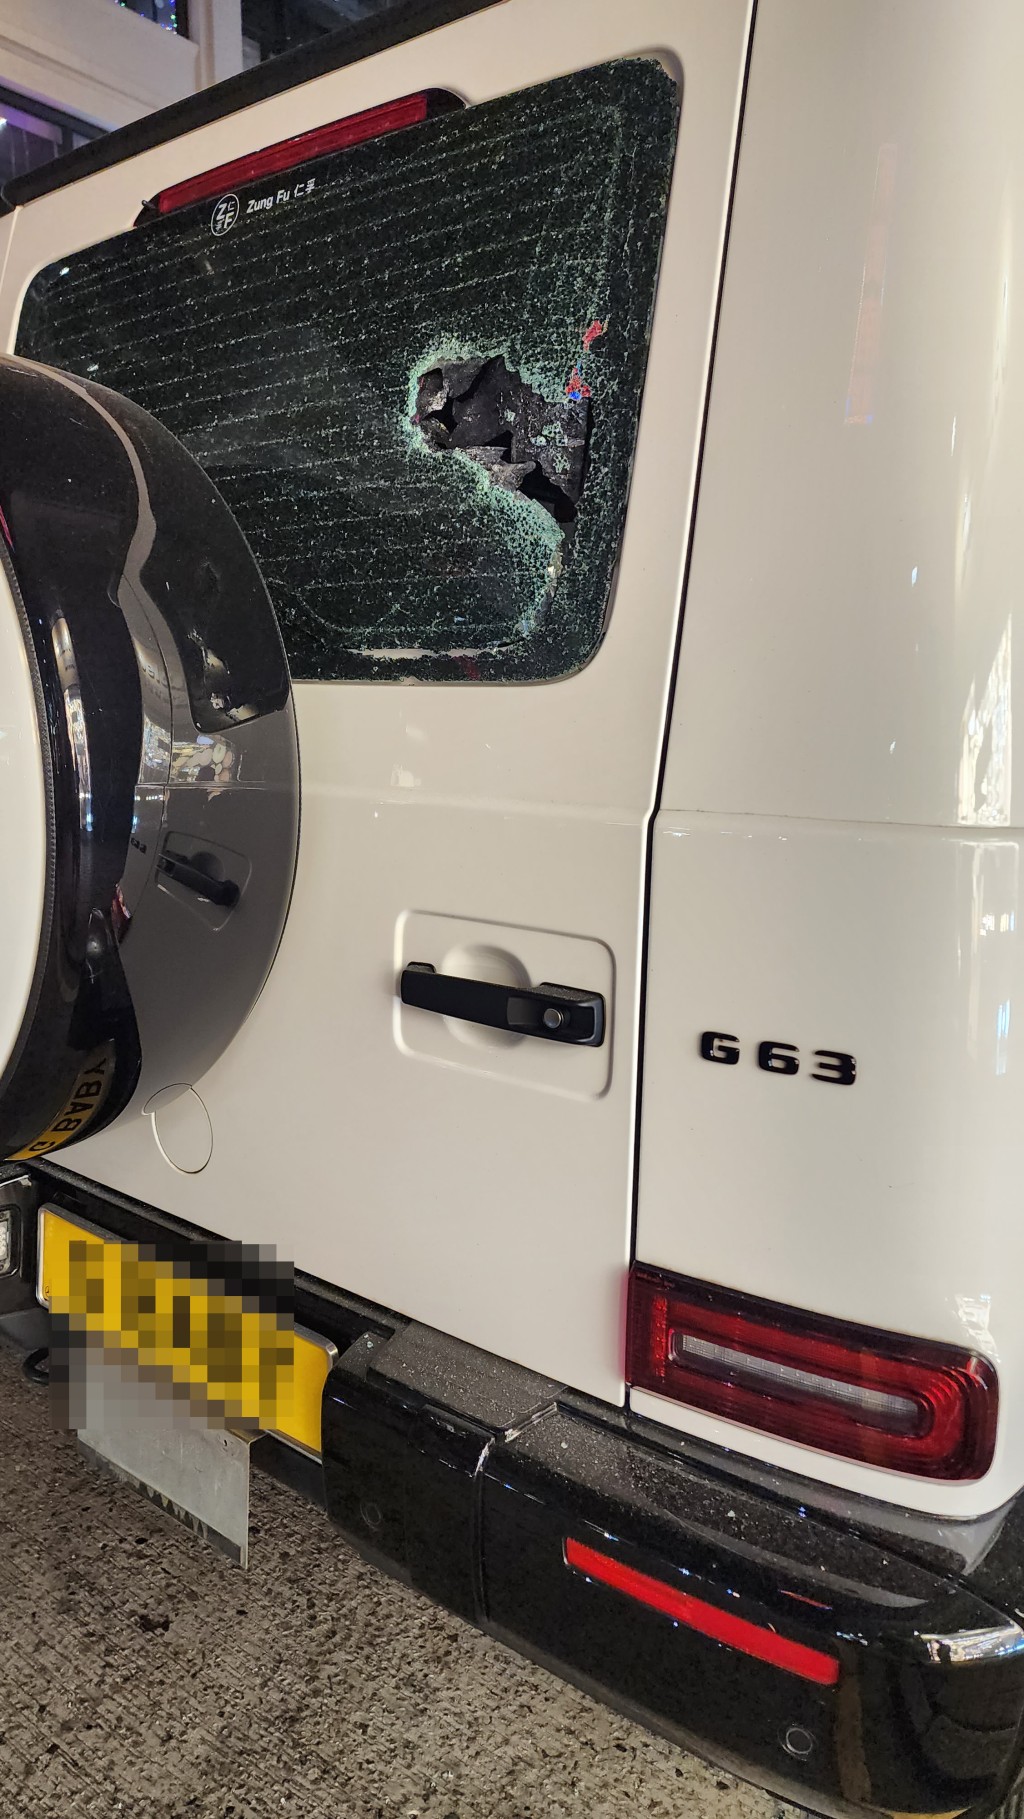 四驅車的車尾擋風玻璃亦被人用硬物擊毀。